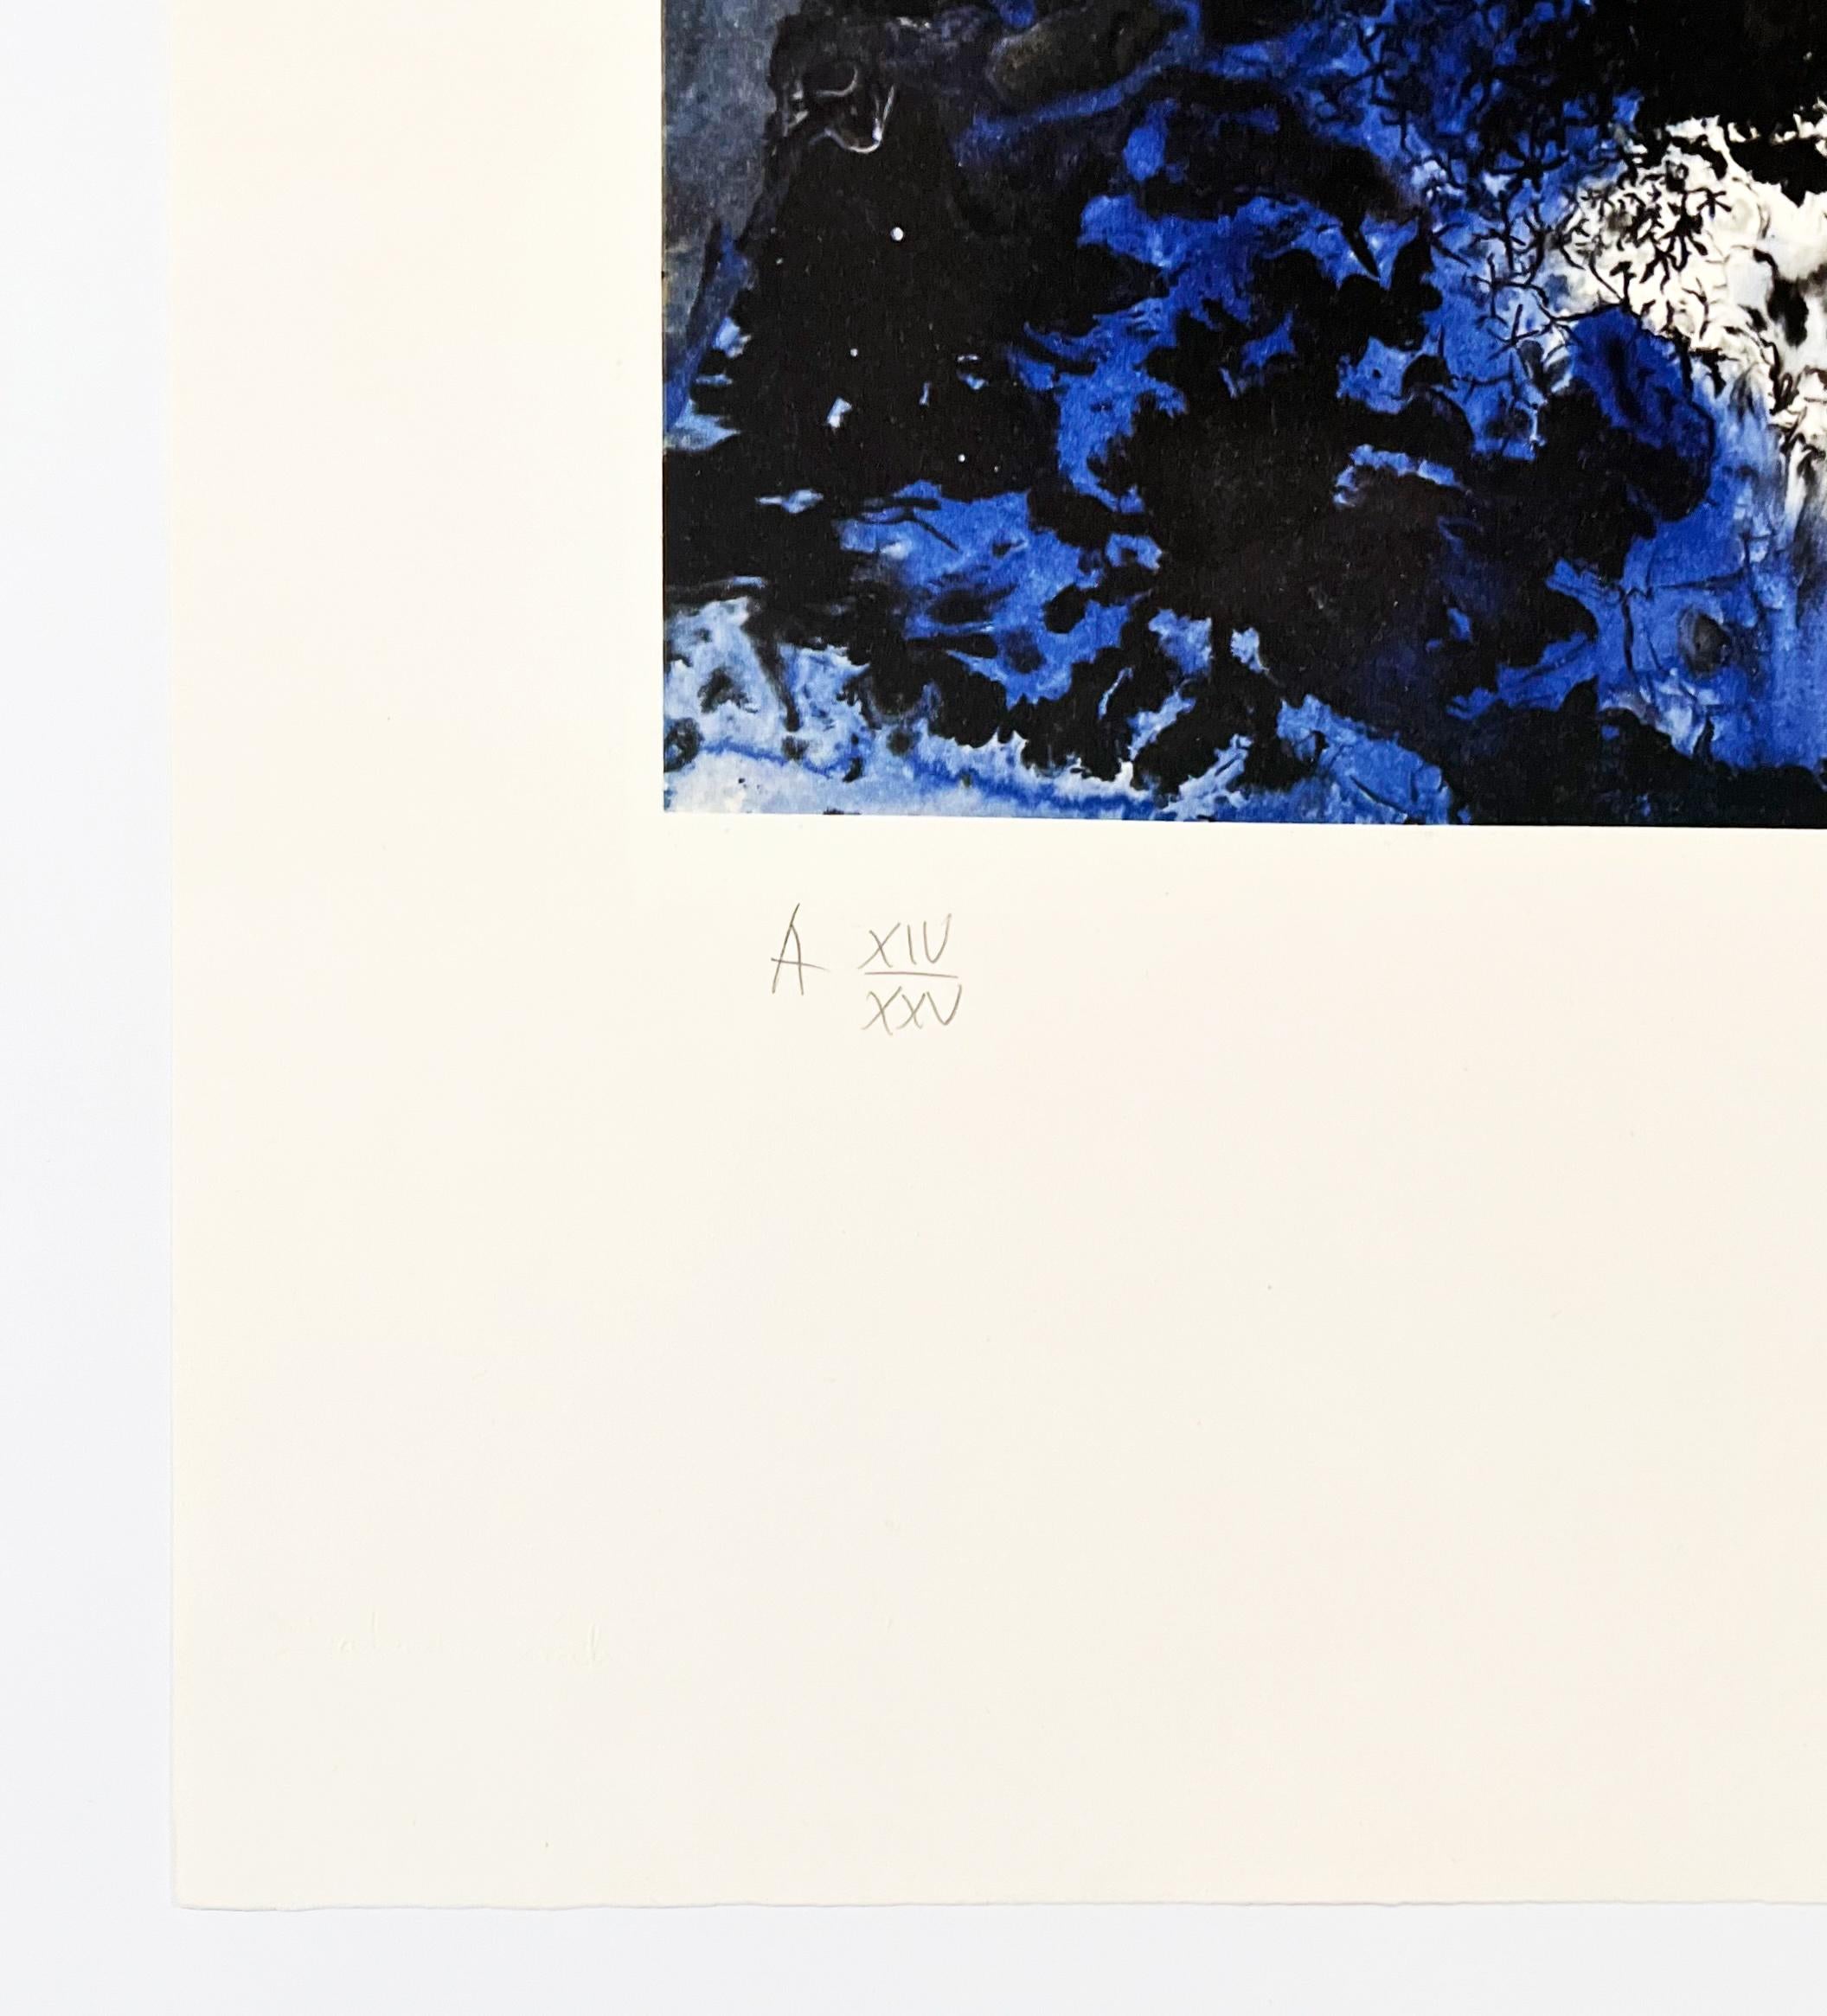 Künstler: Salvador Dali
Titel: Ultra-surrealistisches Korpuskular Galutska
Mappe: Erinnerungen an den Surrealismus
Medium: Radierung und Fotolithografie
Datum: 1971
Auflage: AP XIV/XXV (Künstlerabzug 14/25, abgesehen von der Auflage von